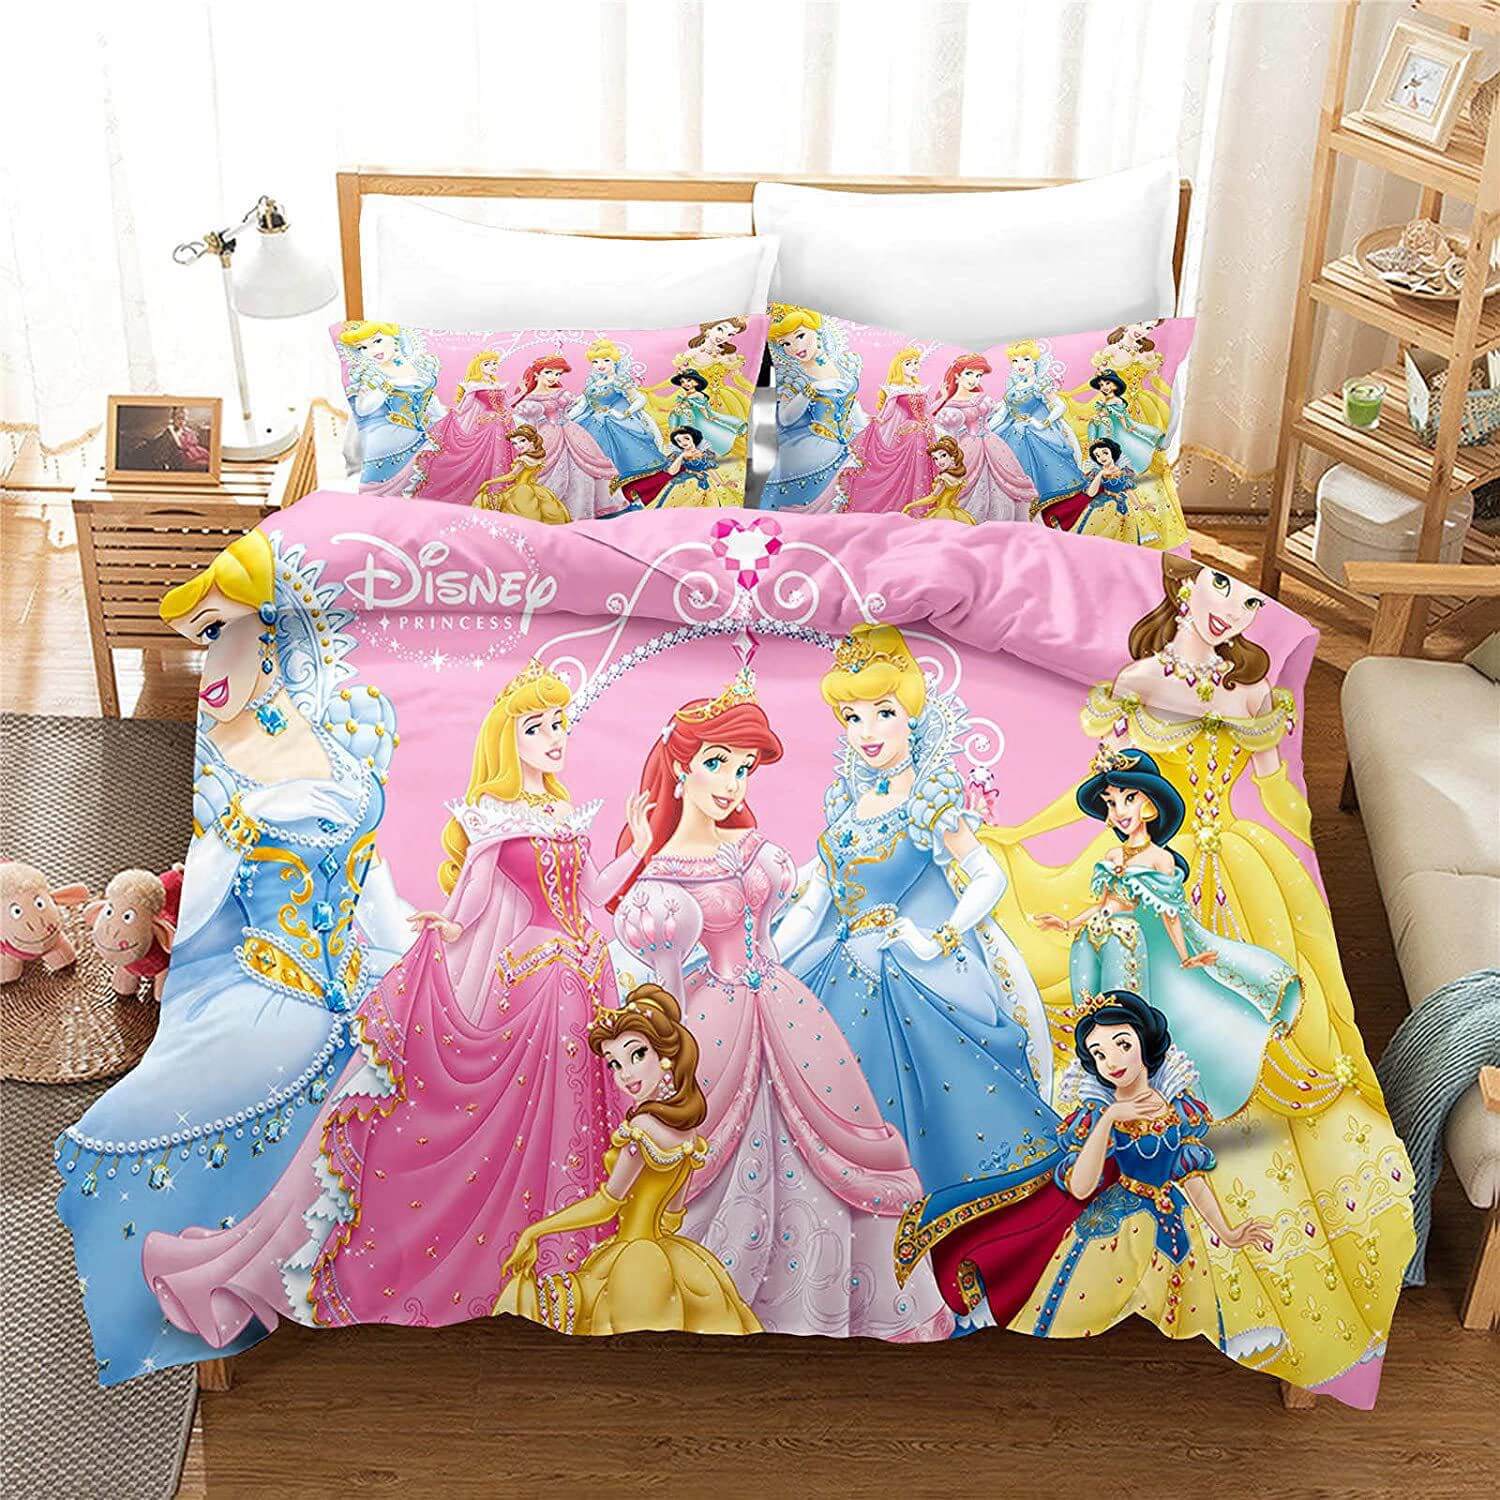 Disney Princess Bedding Set Duvet Cover Without Filler